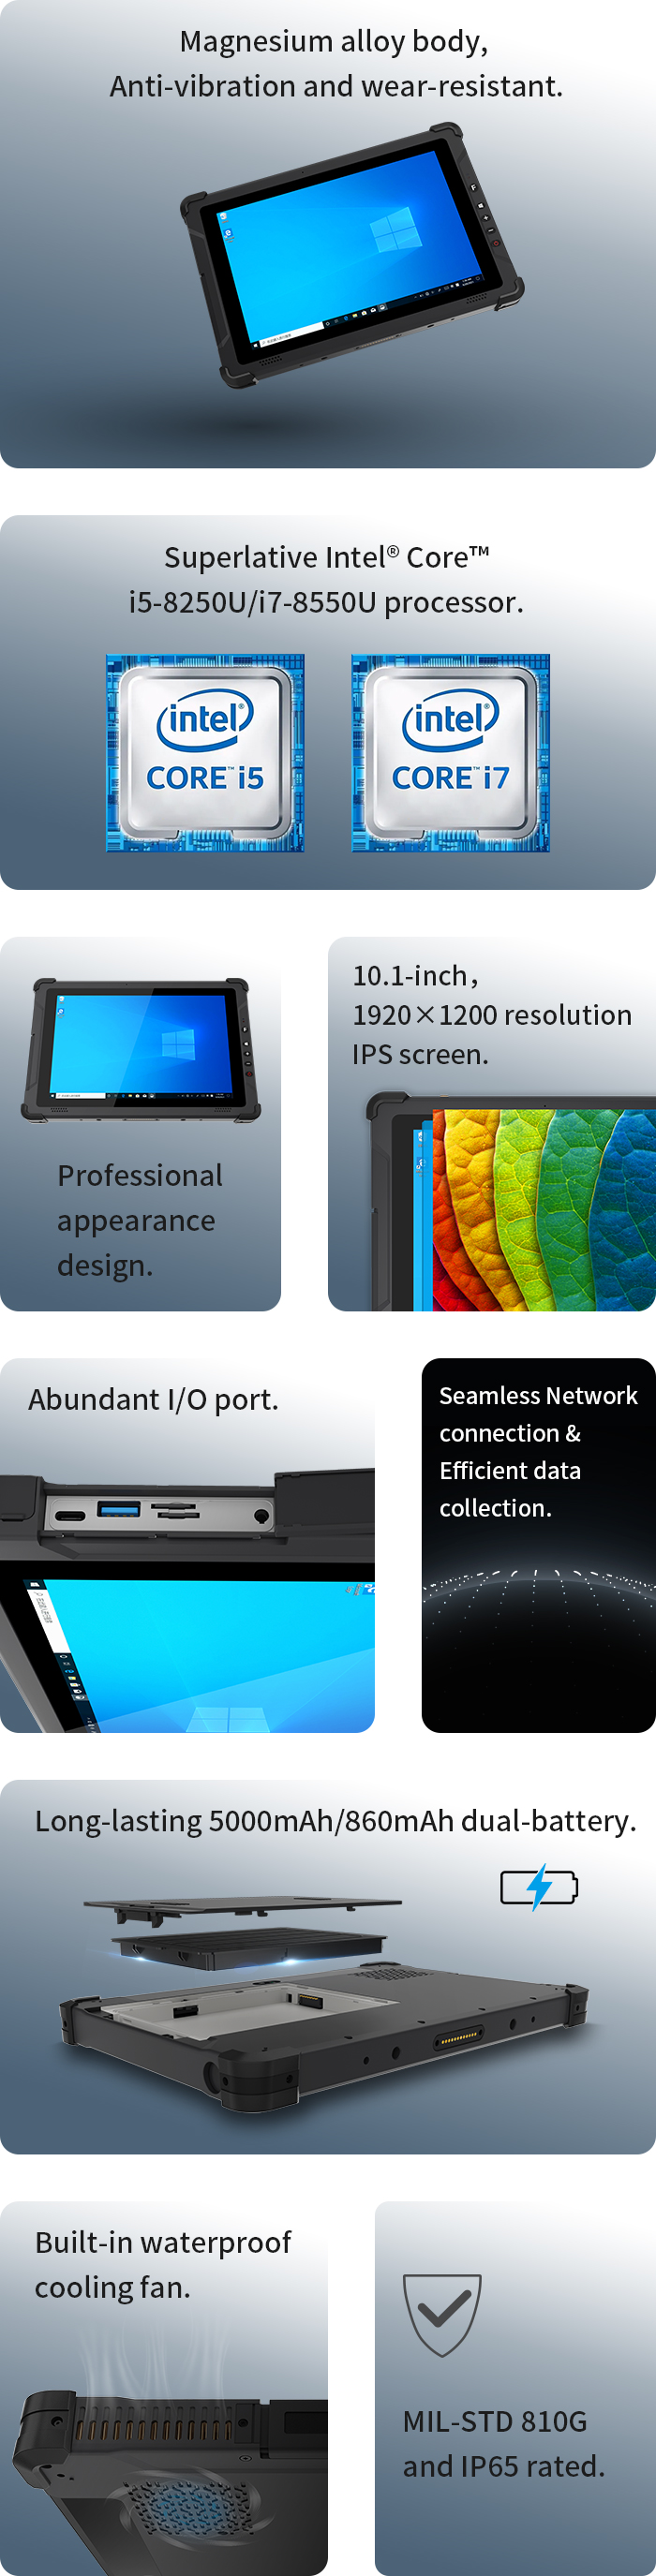  Emdoor Info kündigte im März 2022 ein neues robustes Tablet I12U an